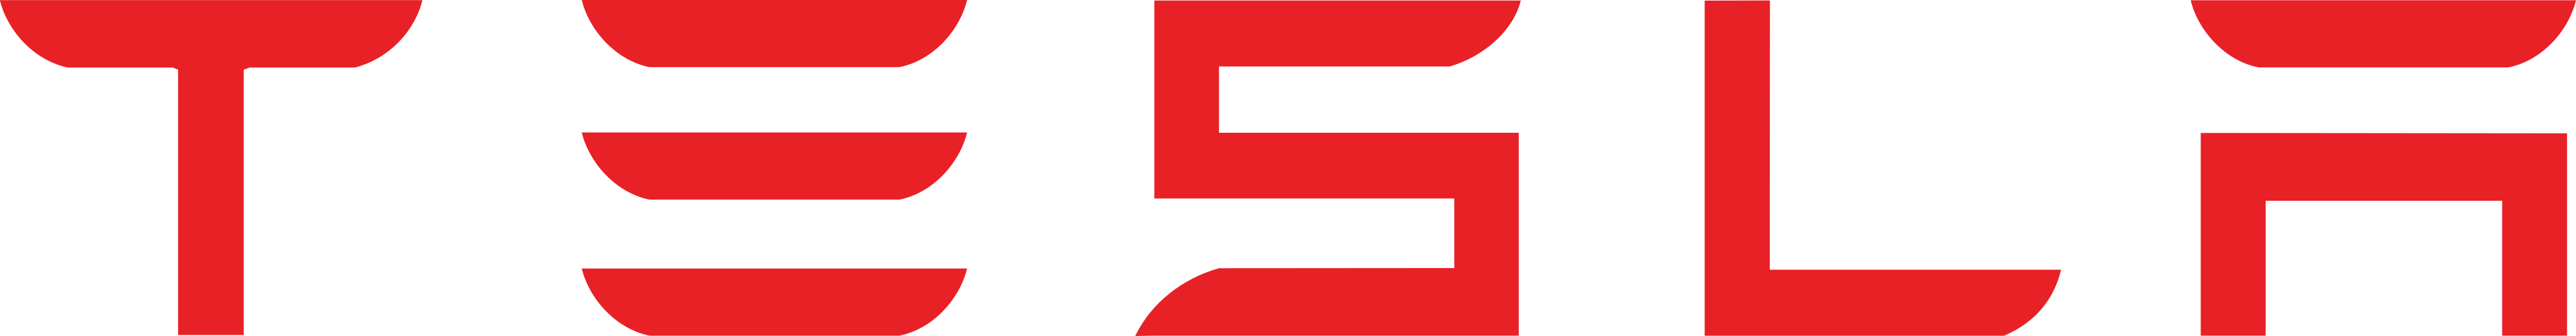 tesla logo 1 - Tesla Logo